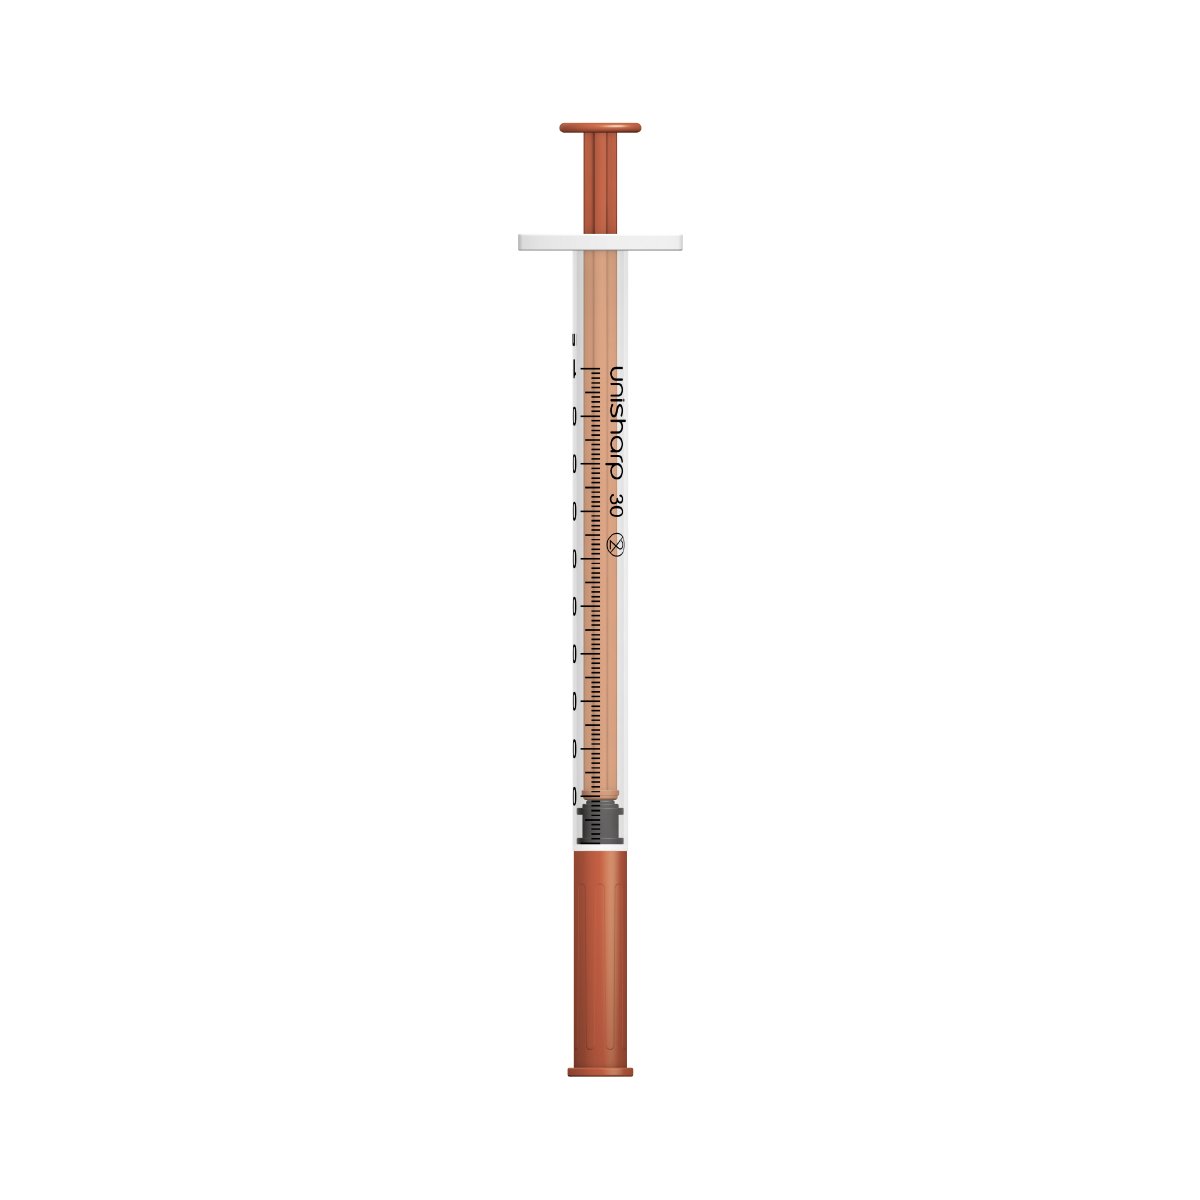 Unisharp 1ml 30G fixed needle syringe: red